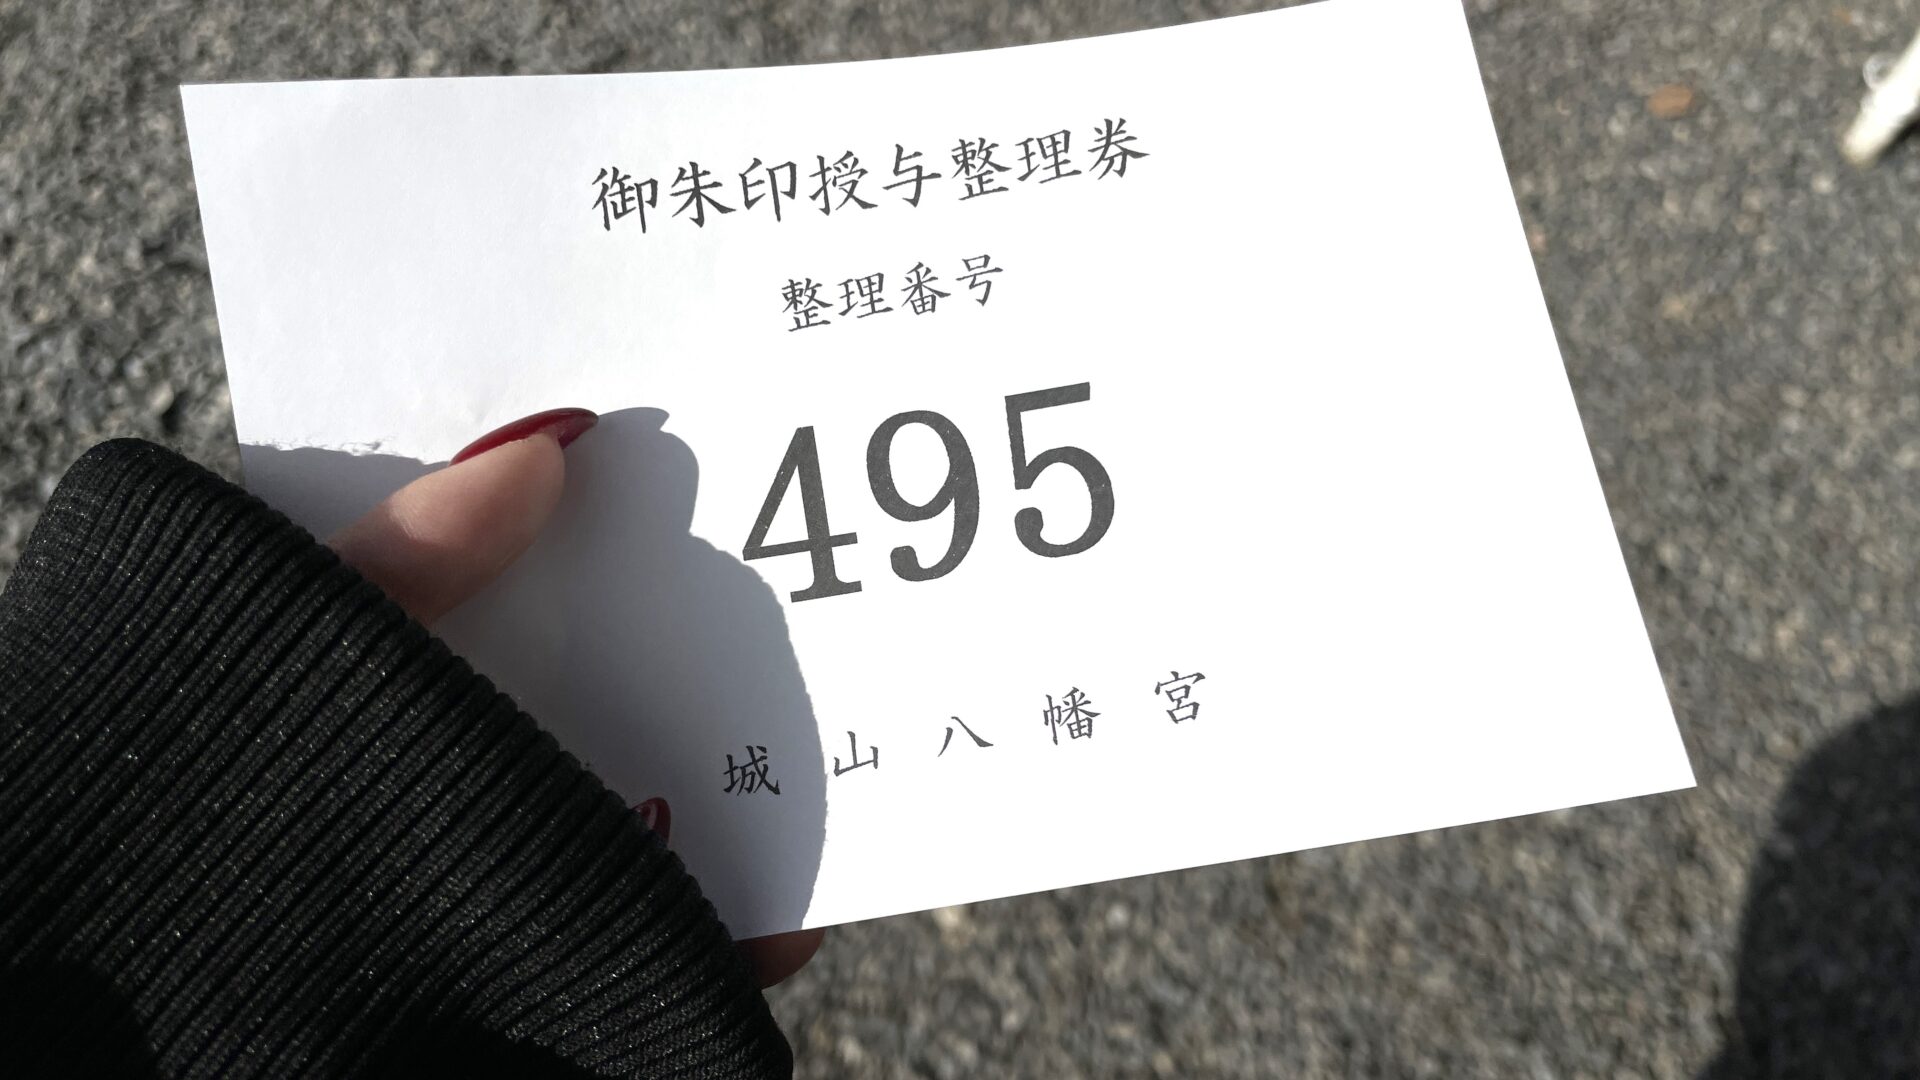 城山八幡社で御朱印を待っている間に渡される番号札の写真